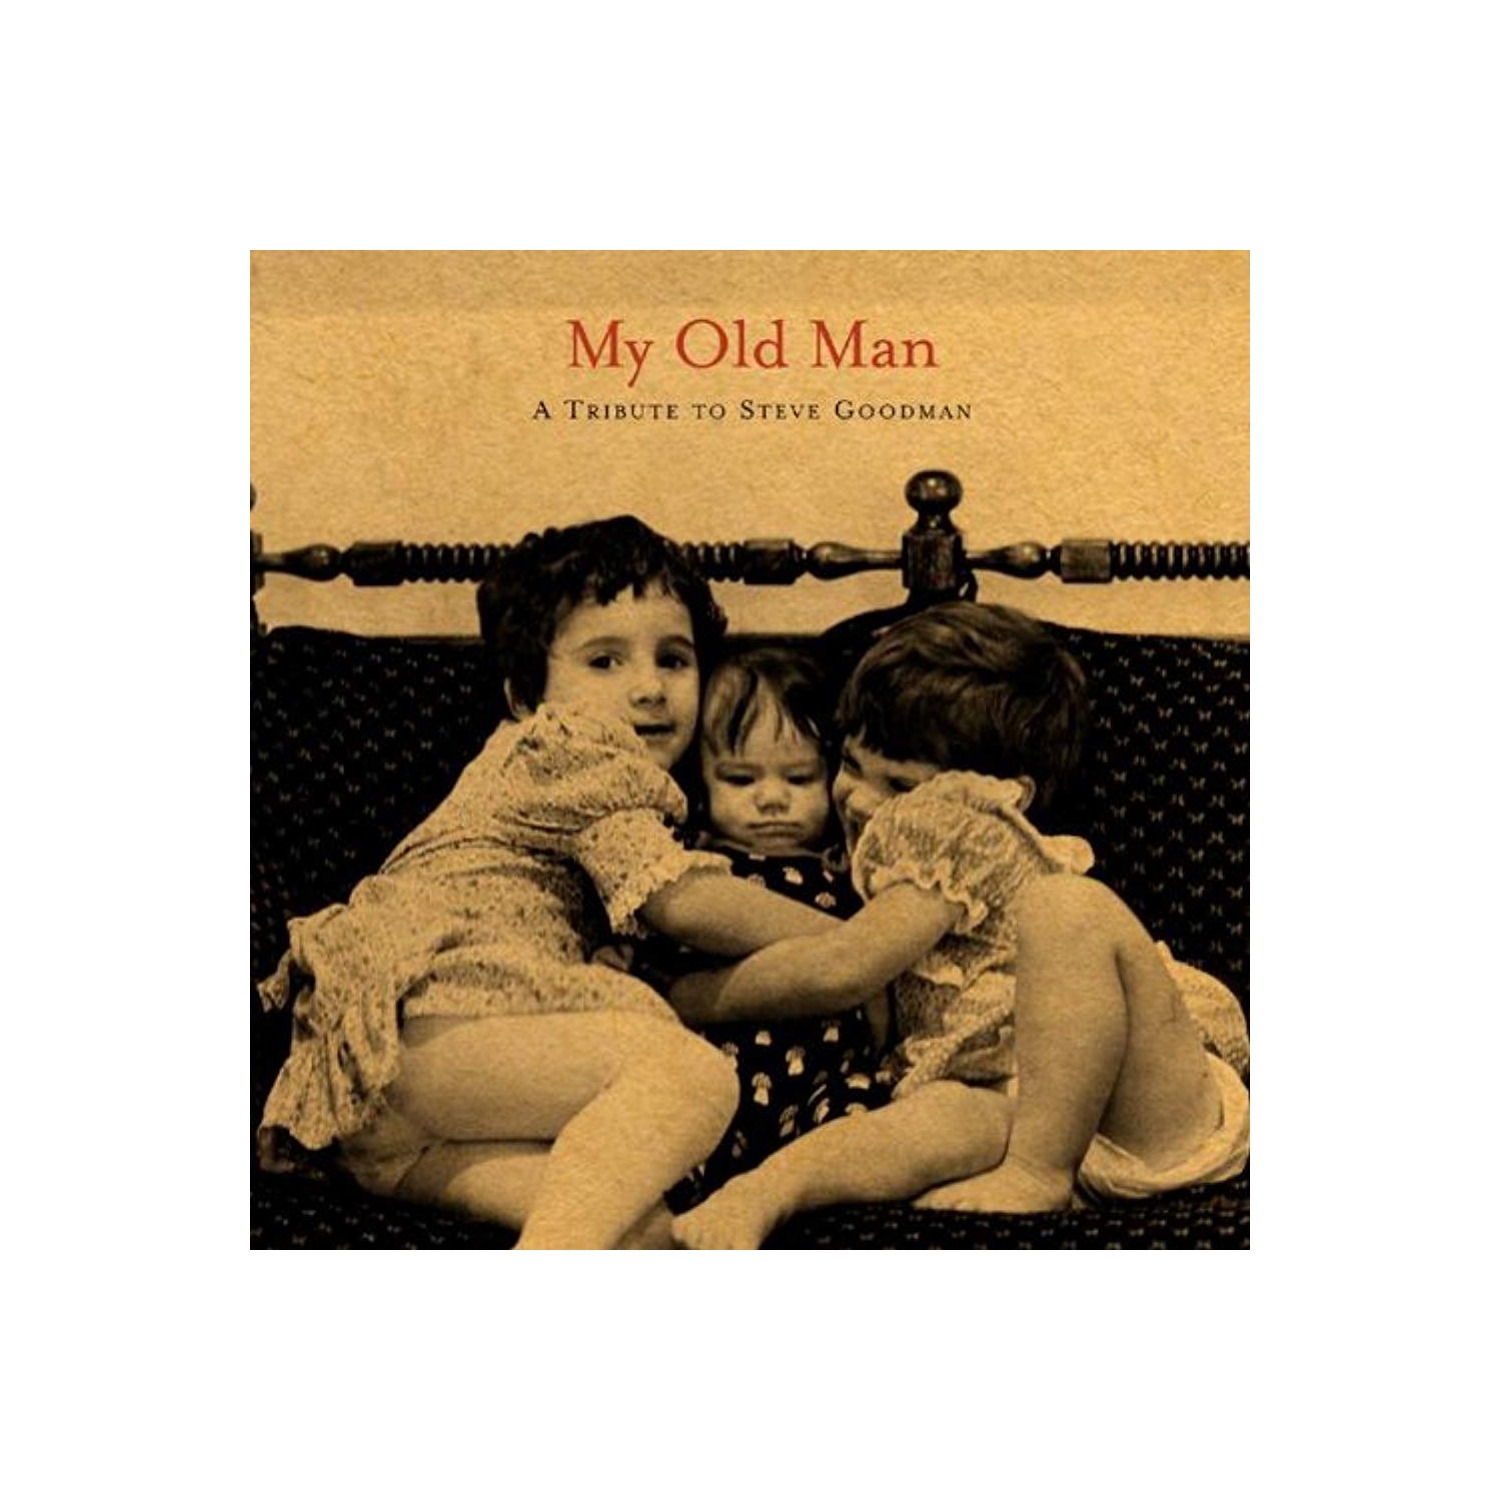 My Old Man: A Tribute to Steve Goodman [Audio CD] Ana Egge